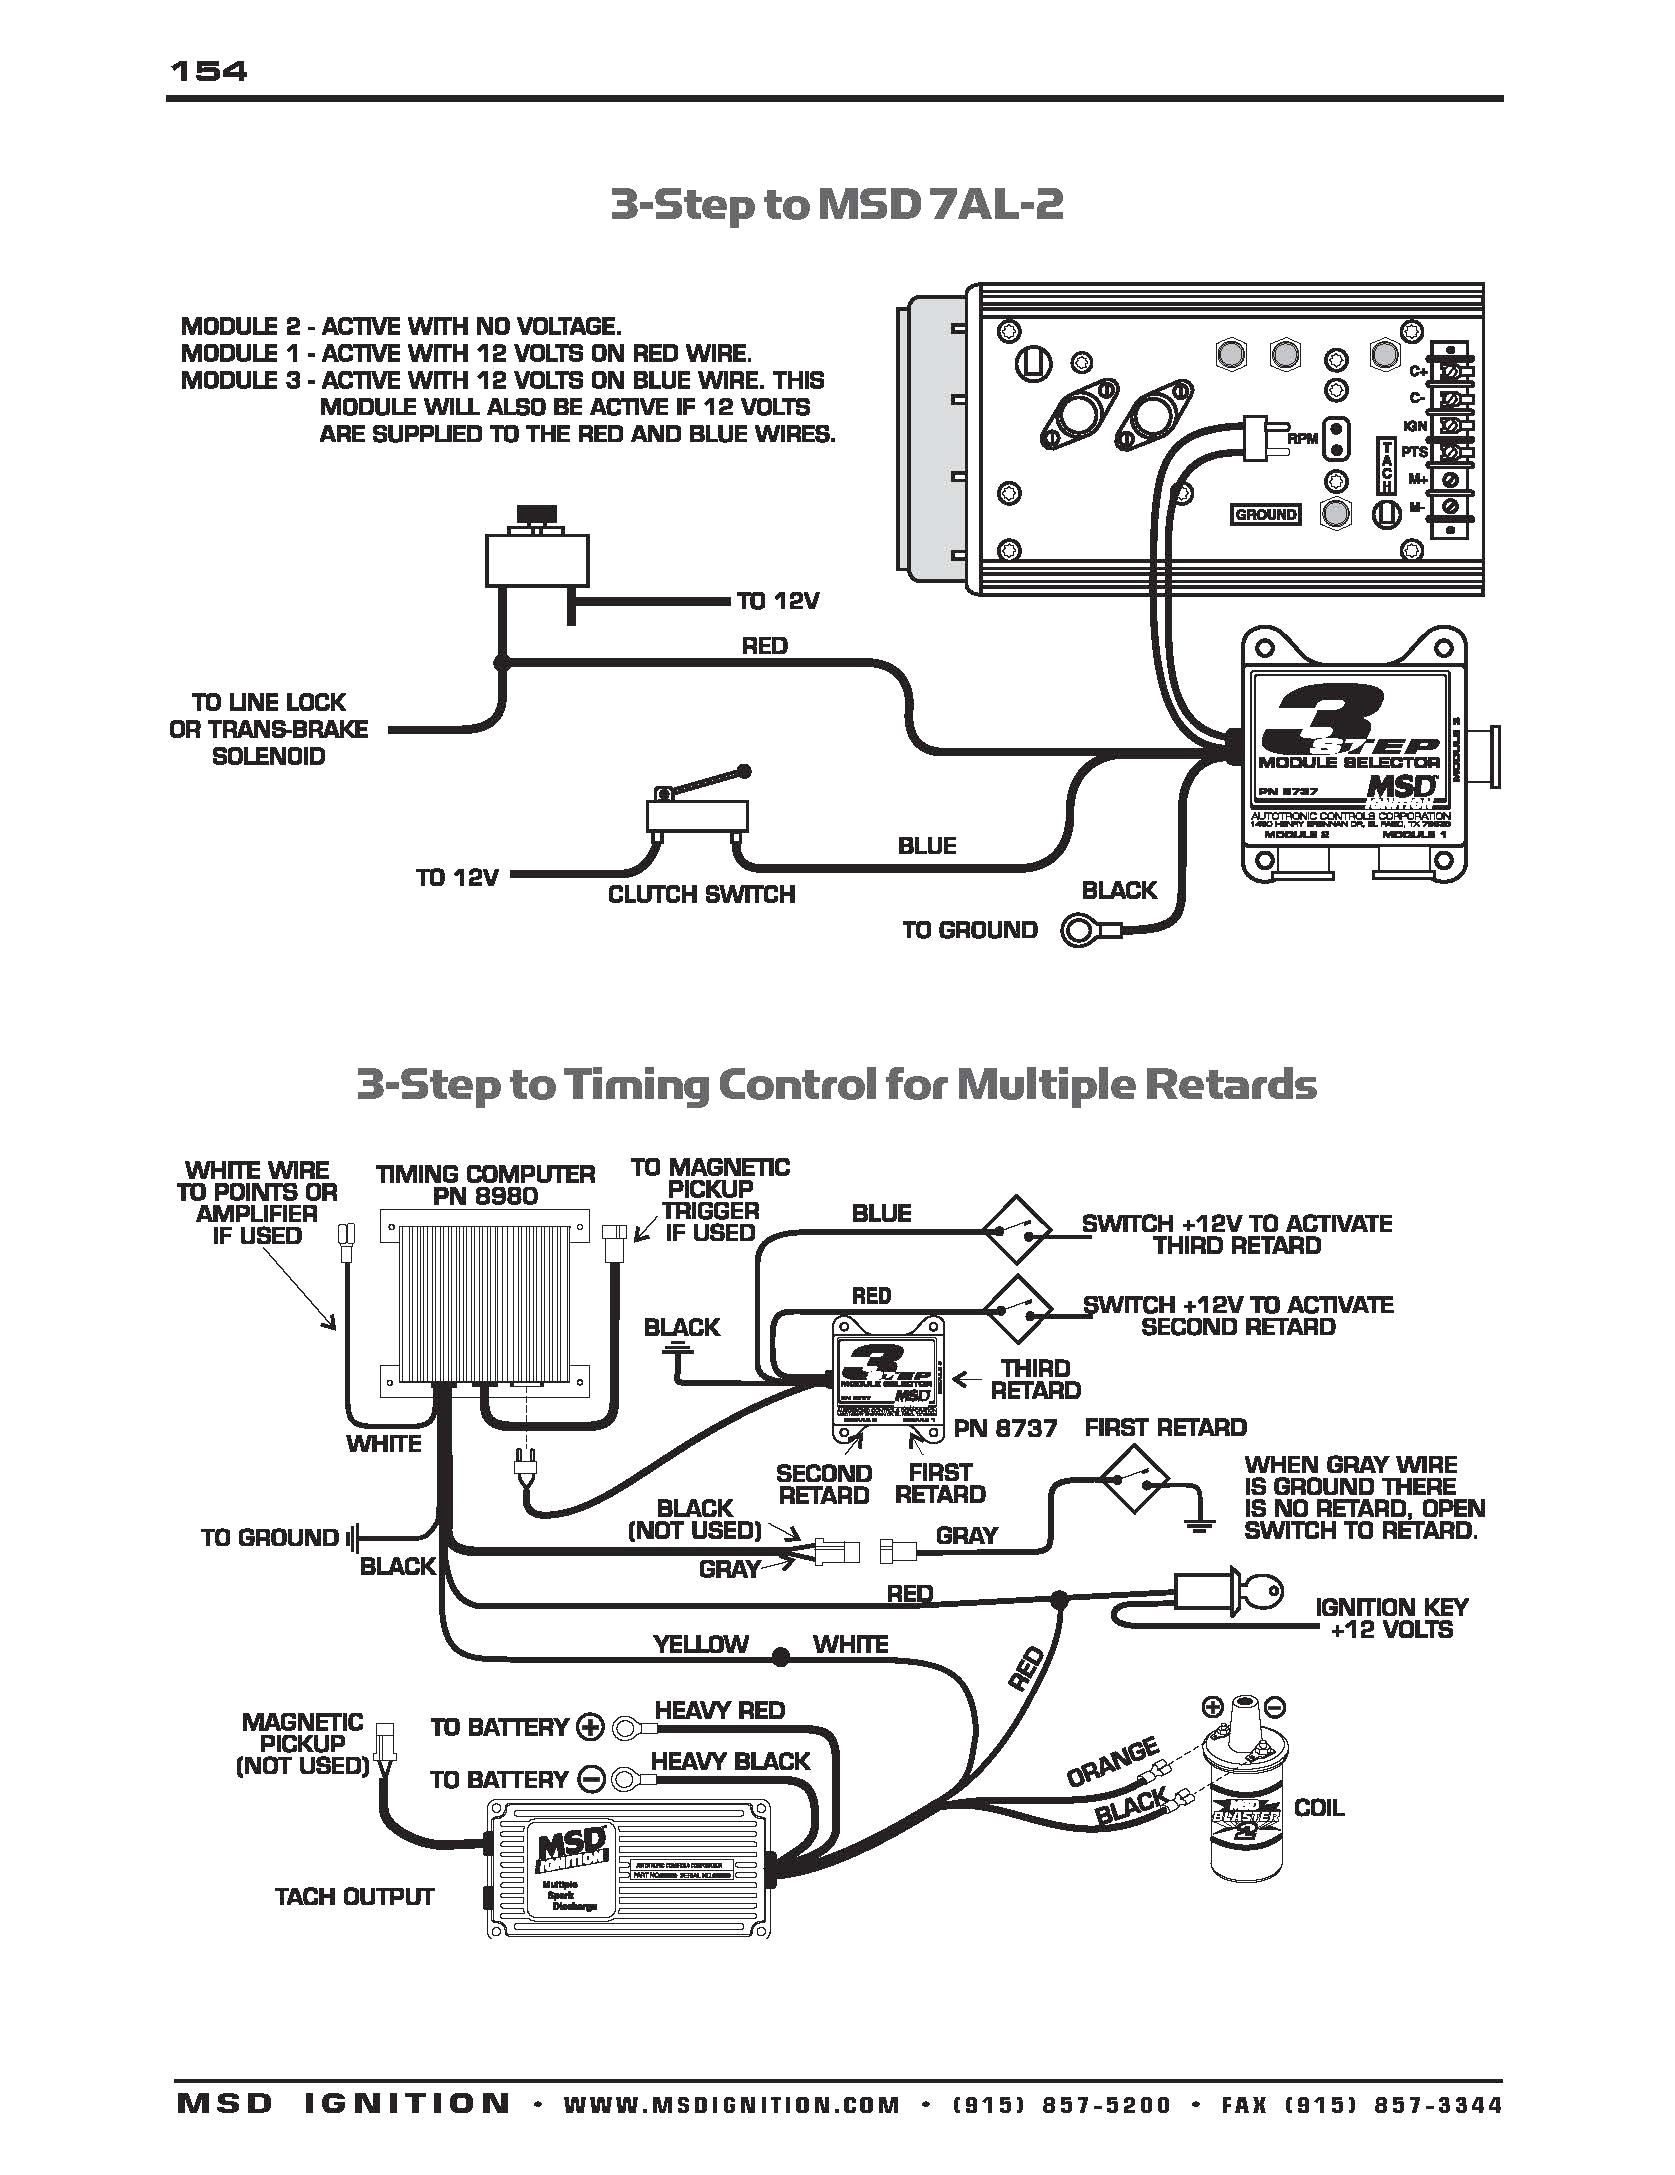 msd 7 wiring diagram wiring diagram msd 5 wiring diagram